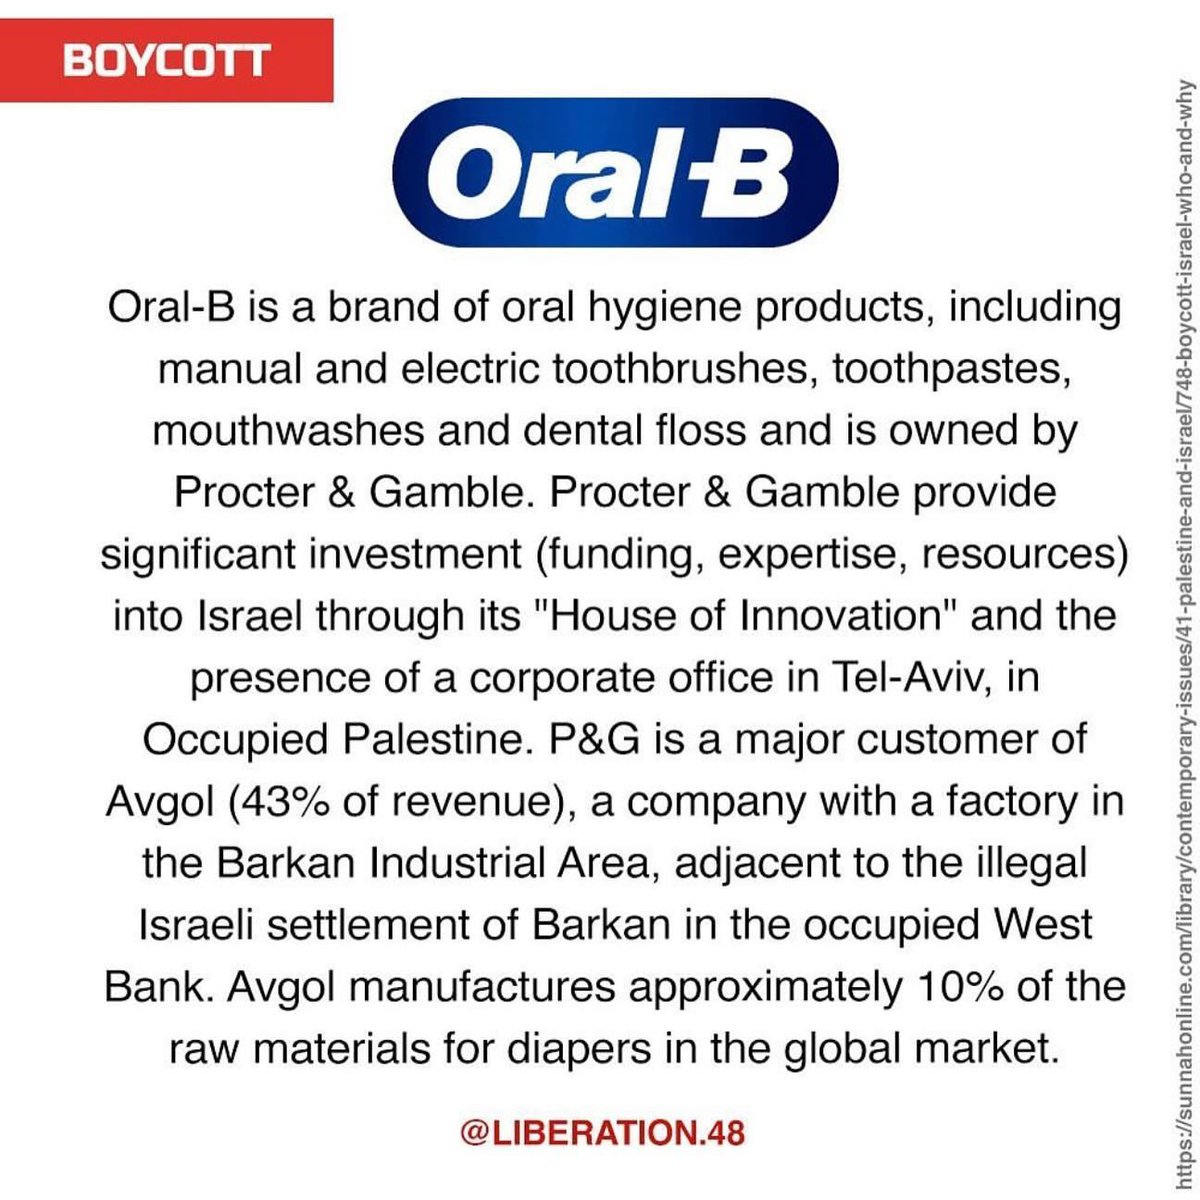 #boycottforgaza #warcriminal #usa #biden #israel #netanyahu #StopGenocideInGaza #boycott #alleyesonrafah #oralb